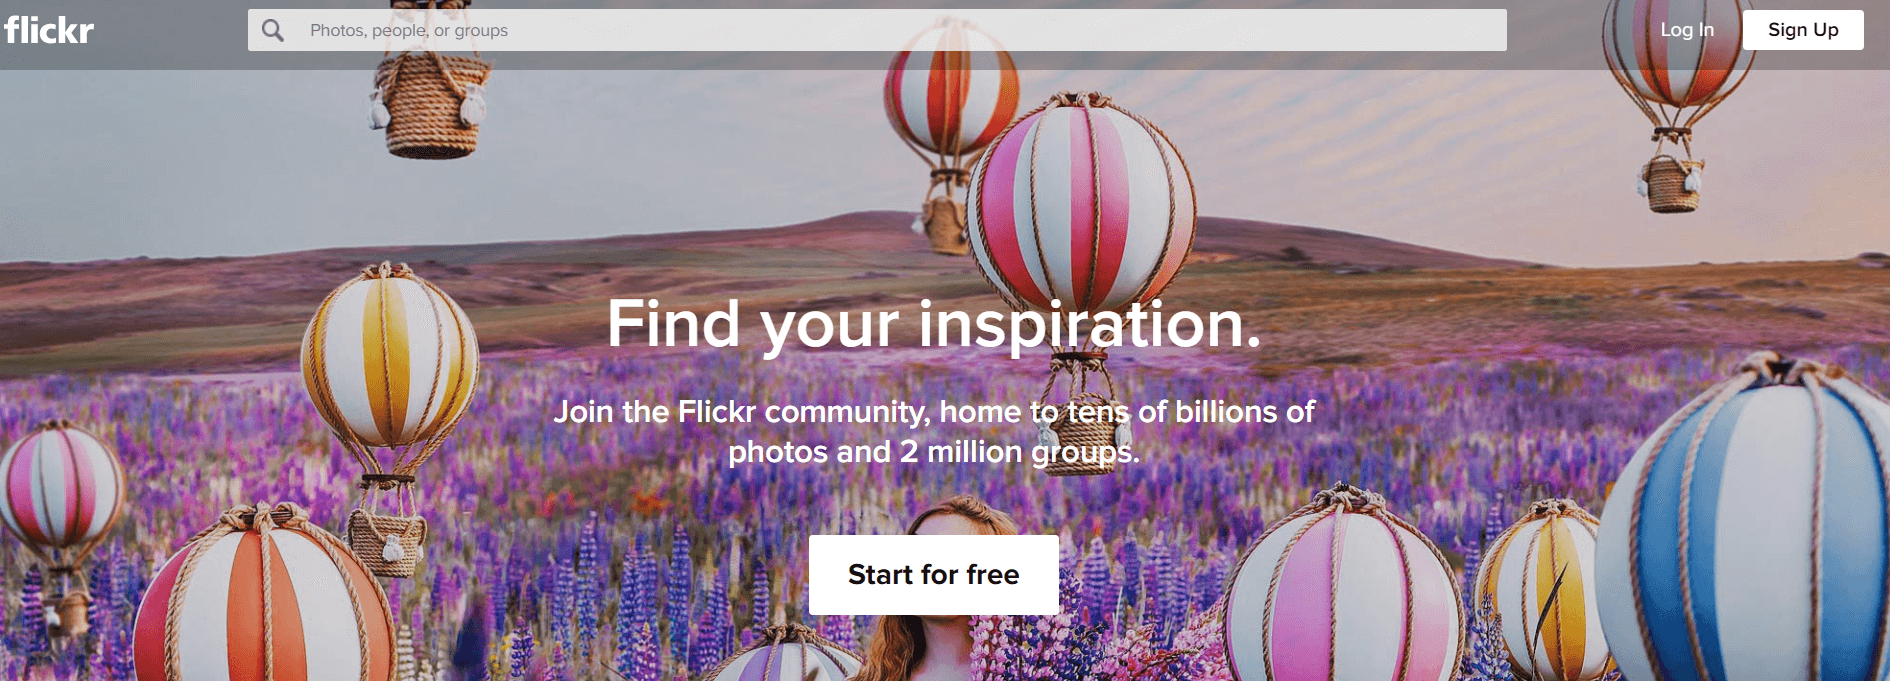 "Flickr"